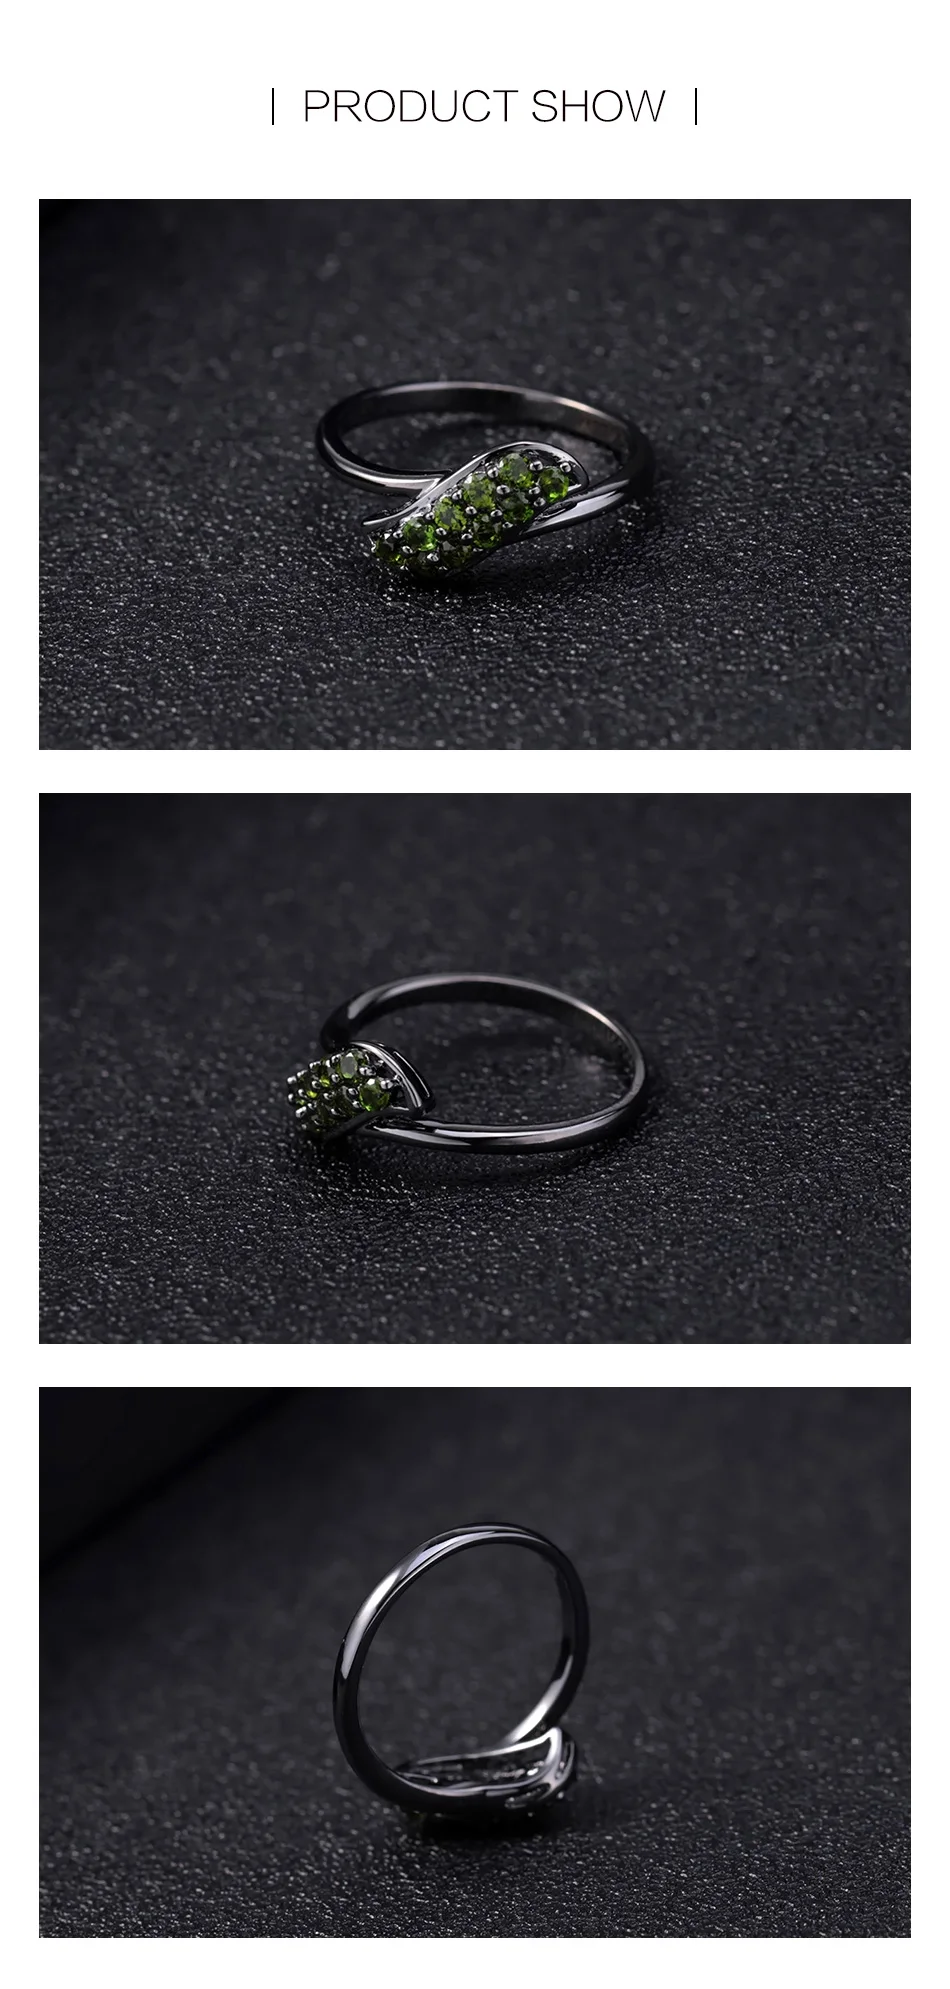 GEM'S BALLET 0.53Ct натуральный хром диопсид драгоценный камень кольцо 925 пробы серебро простые элегантные кольца для женщин ювелирные украшения